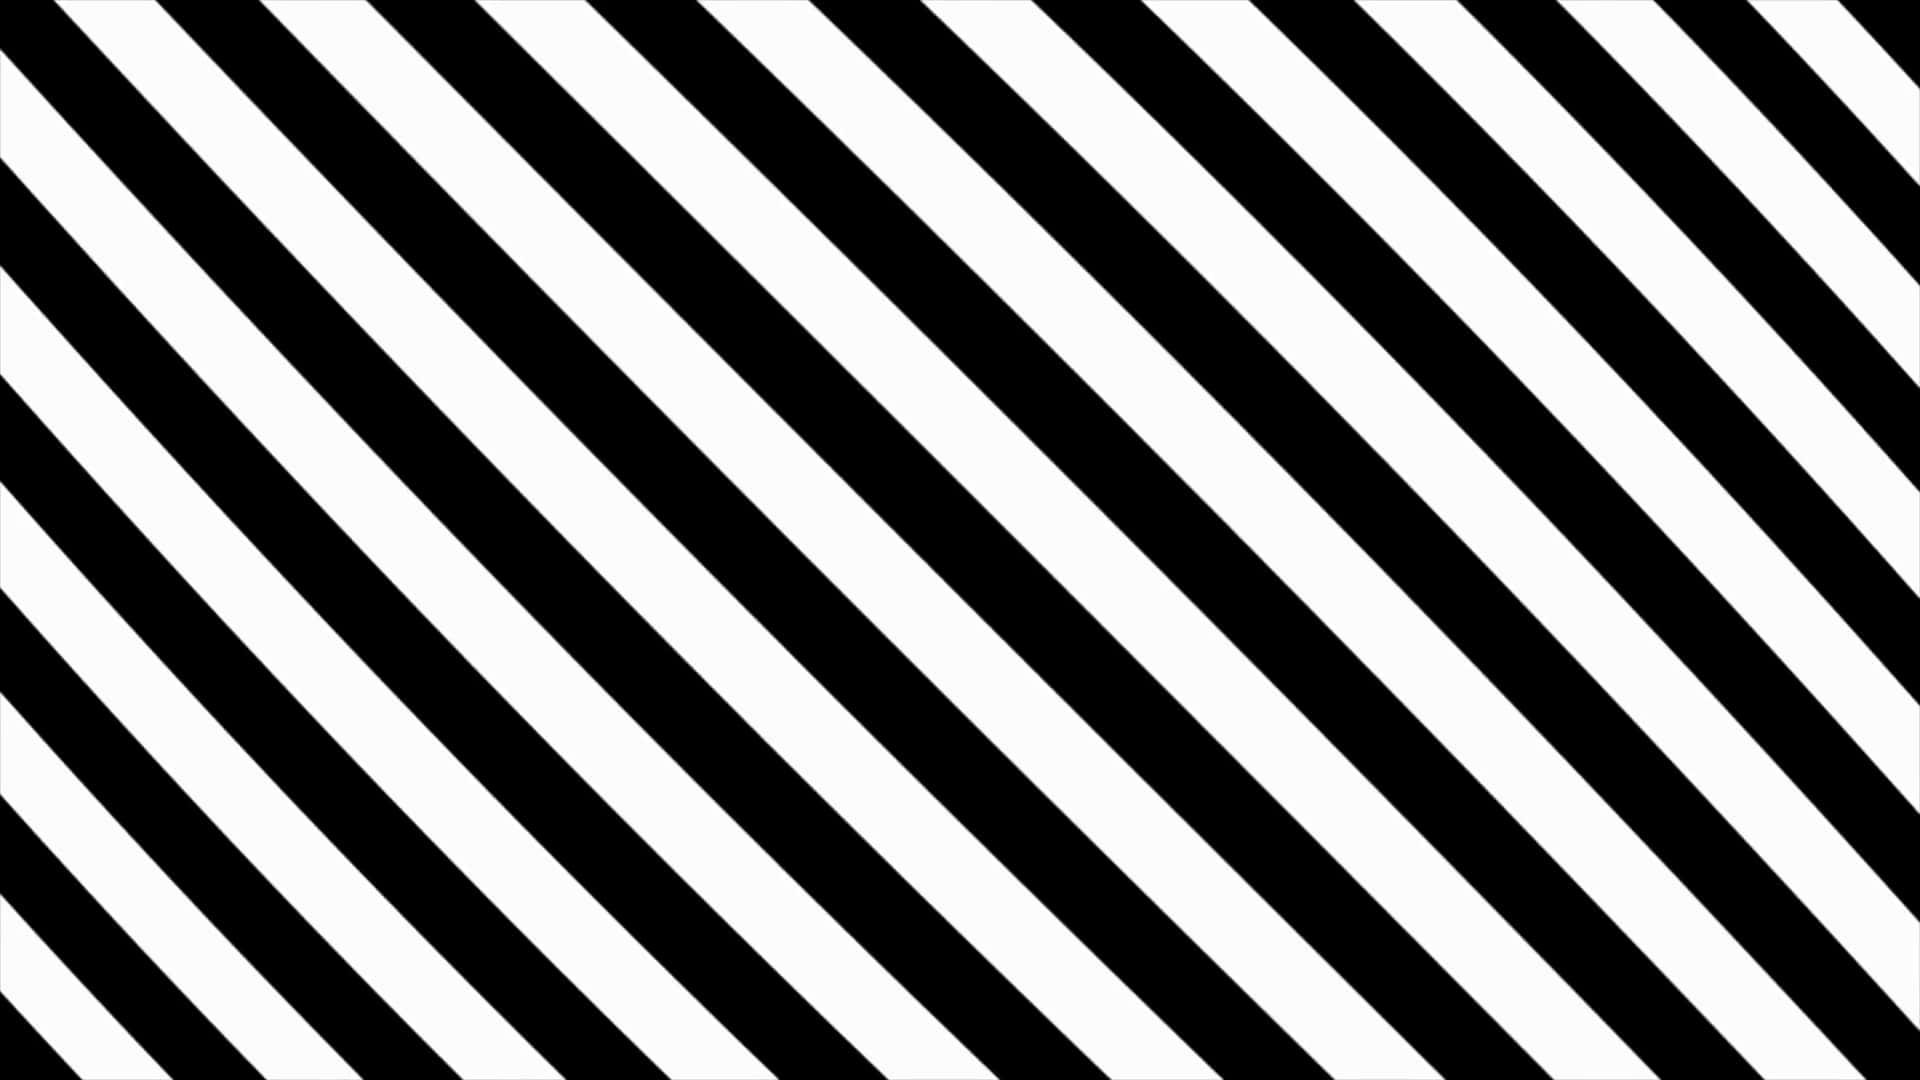 Fetziges,einfaches Und Auffälliges Streifenmuster In Schwarz Und Weiß.